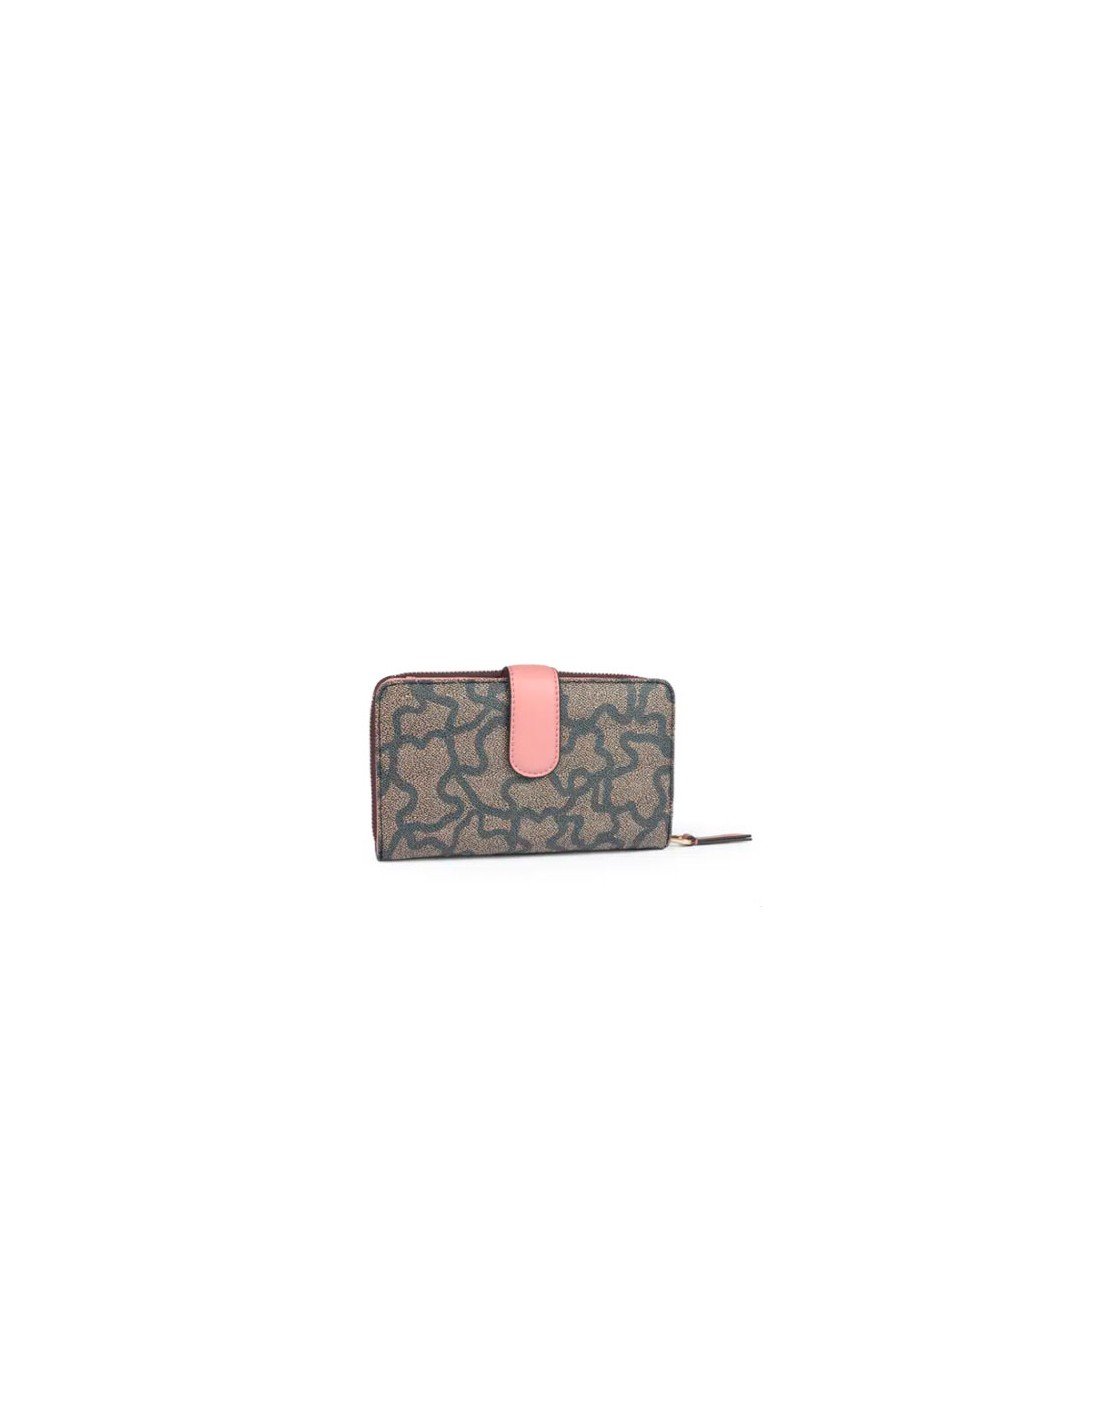 Tous Medium Wallet Kaos Icon Multi Black - Pink, latest offers on Tous Moda  fashion accessories